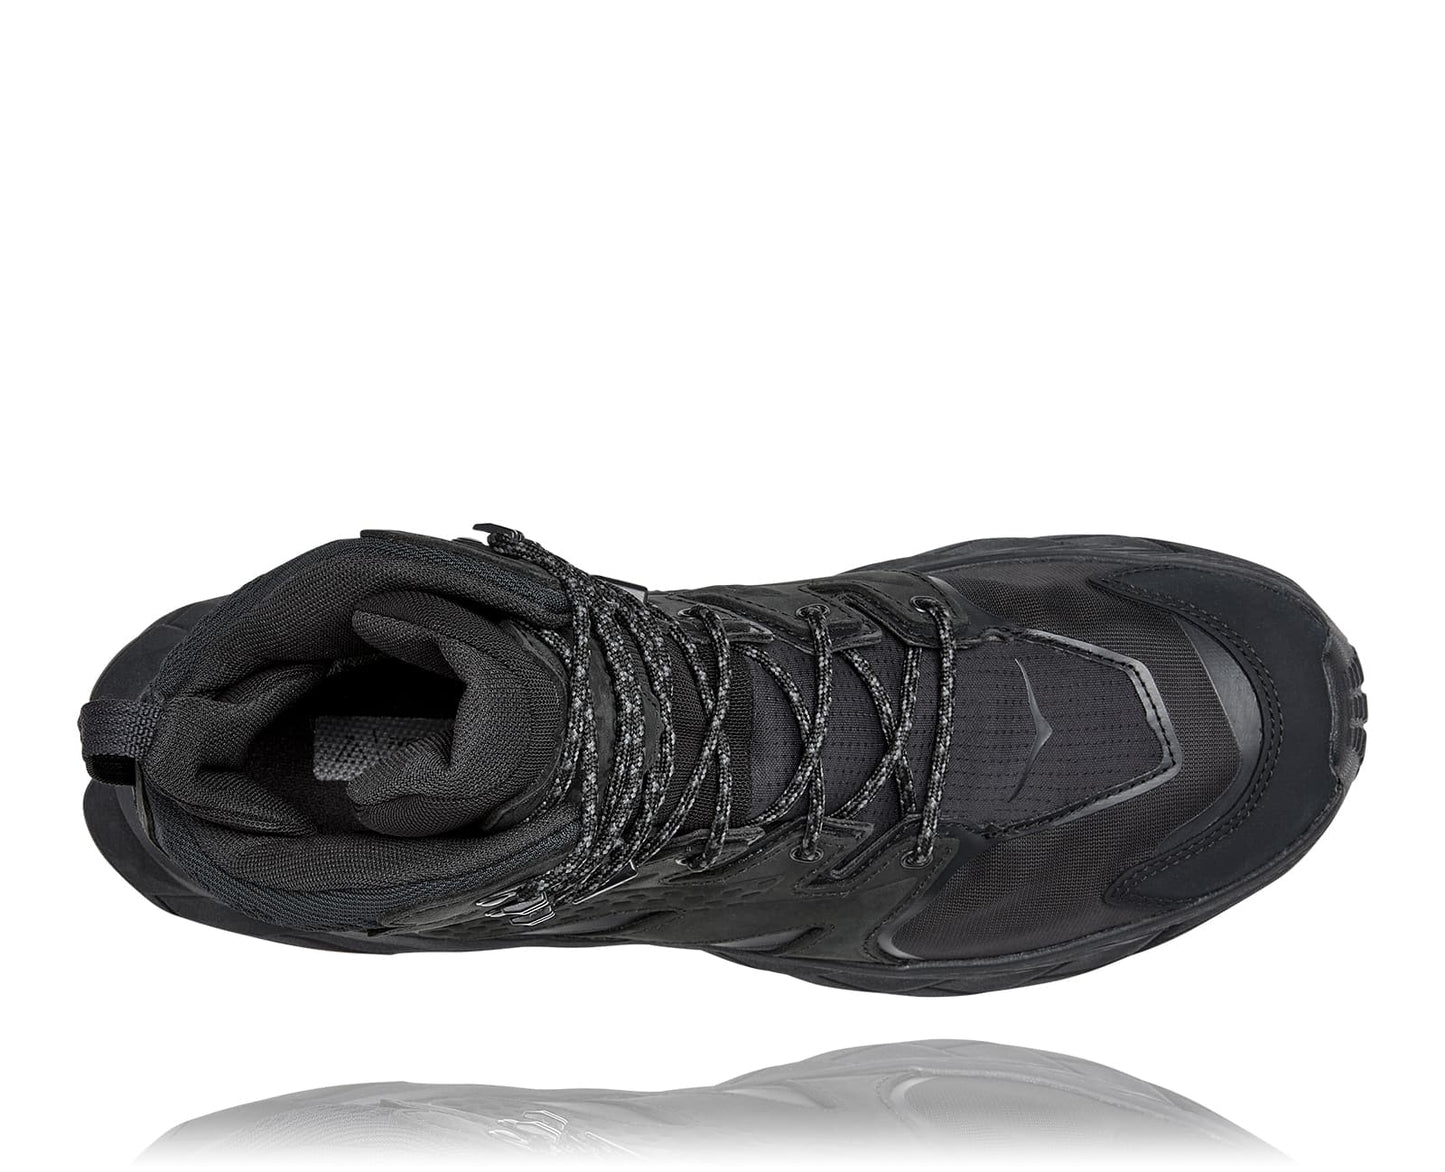 Anacapa M GTX mid, svart vattentät sko perfekt för vandring i alla underlag och väder. Hos Hoka specialisterna i Sverige.